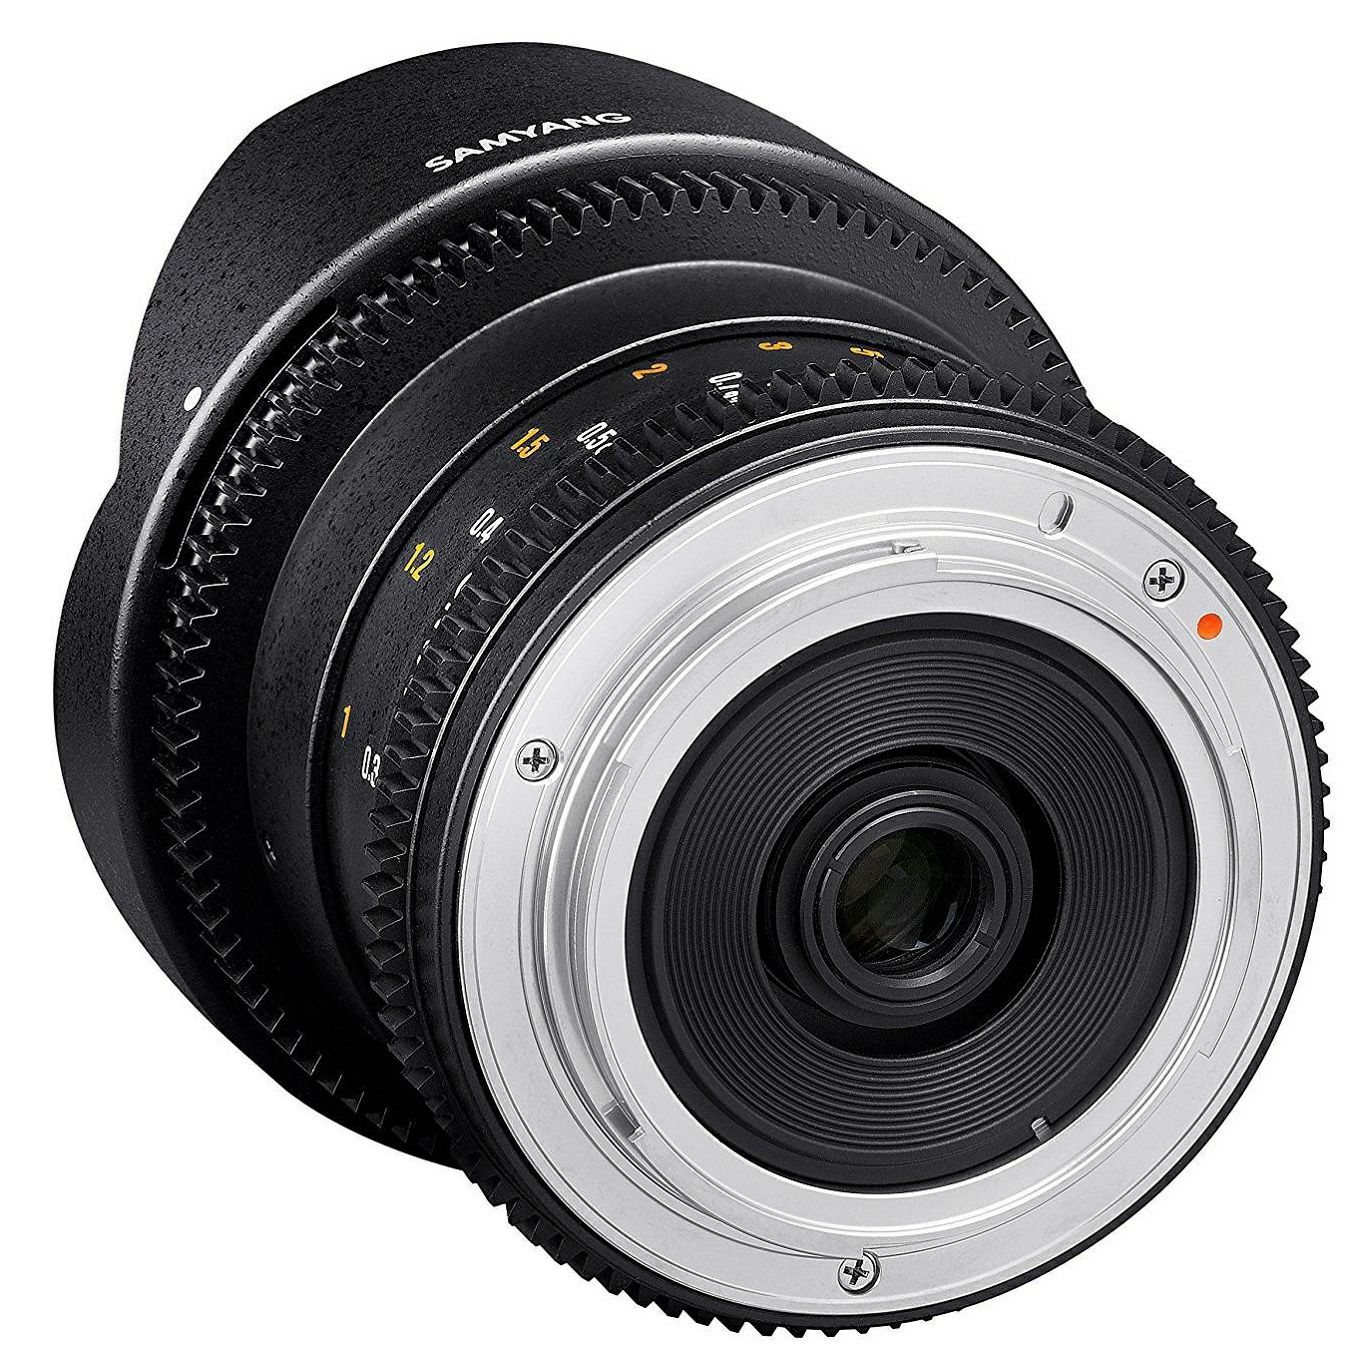 Samyang 8mm T3.8 VDSLR II CSII Fisheye objektiv za Sony E-mount